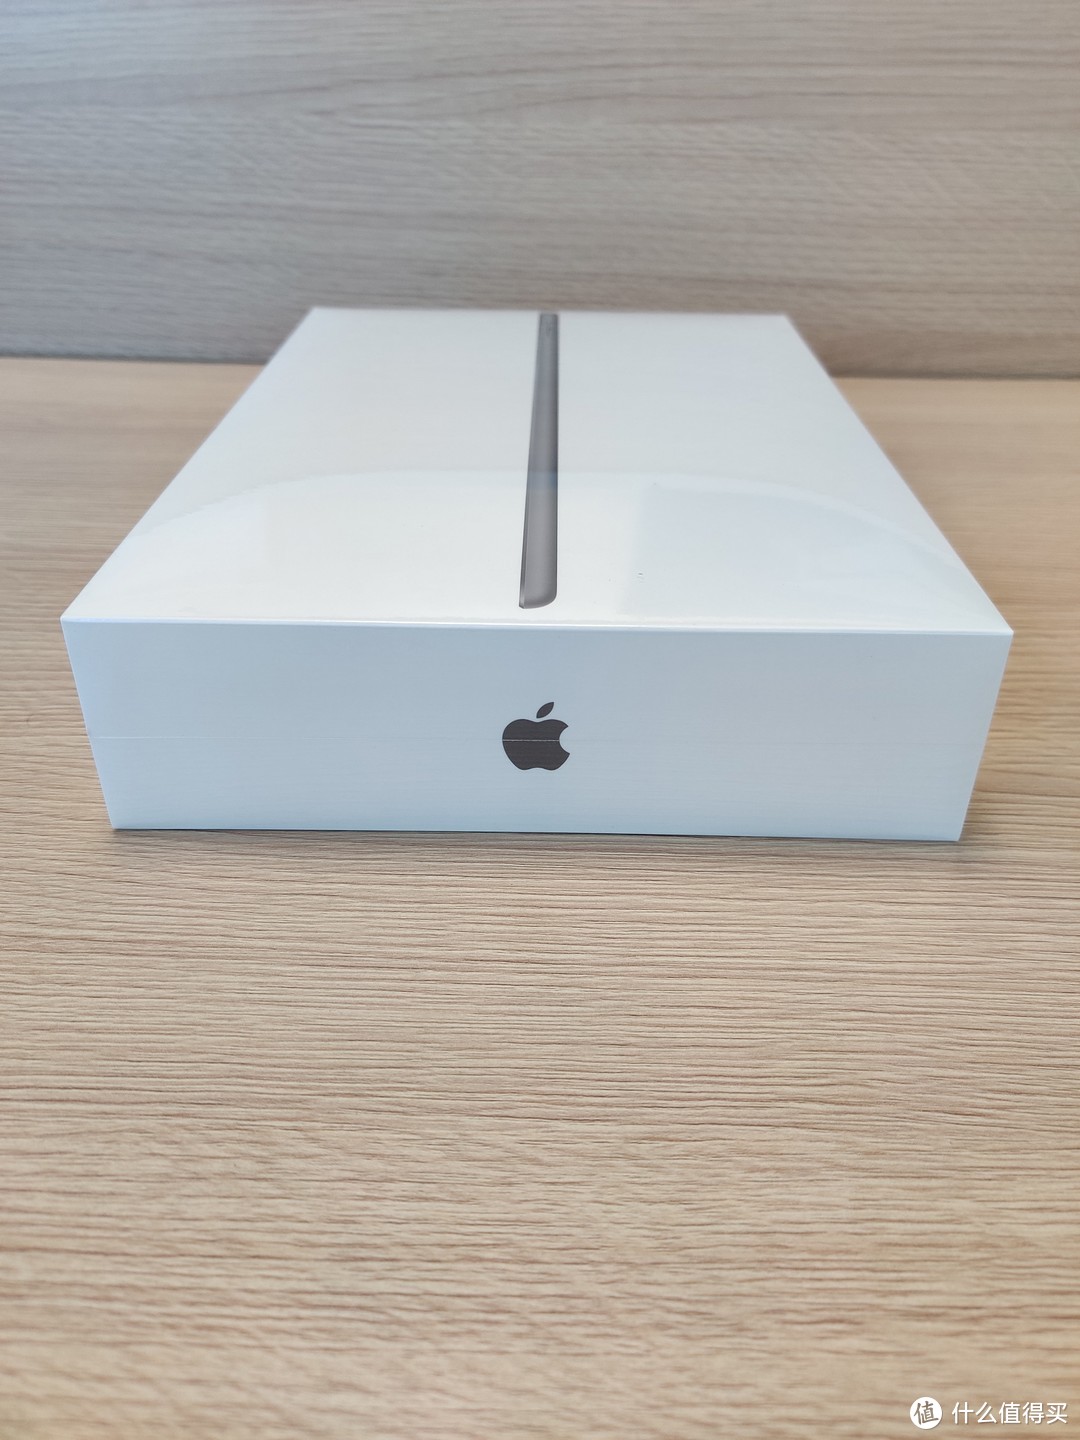 2021秋季苹果新品简单开箱